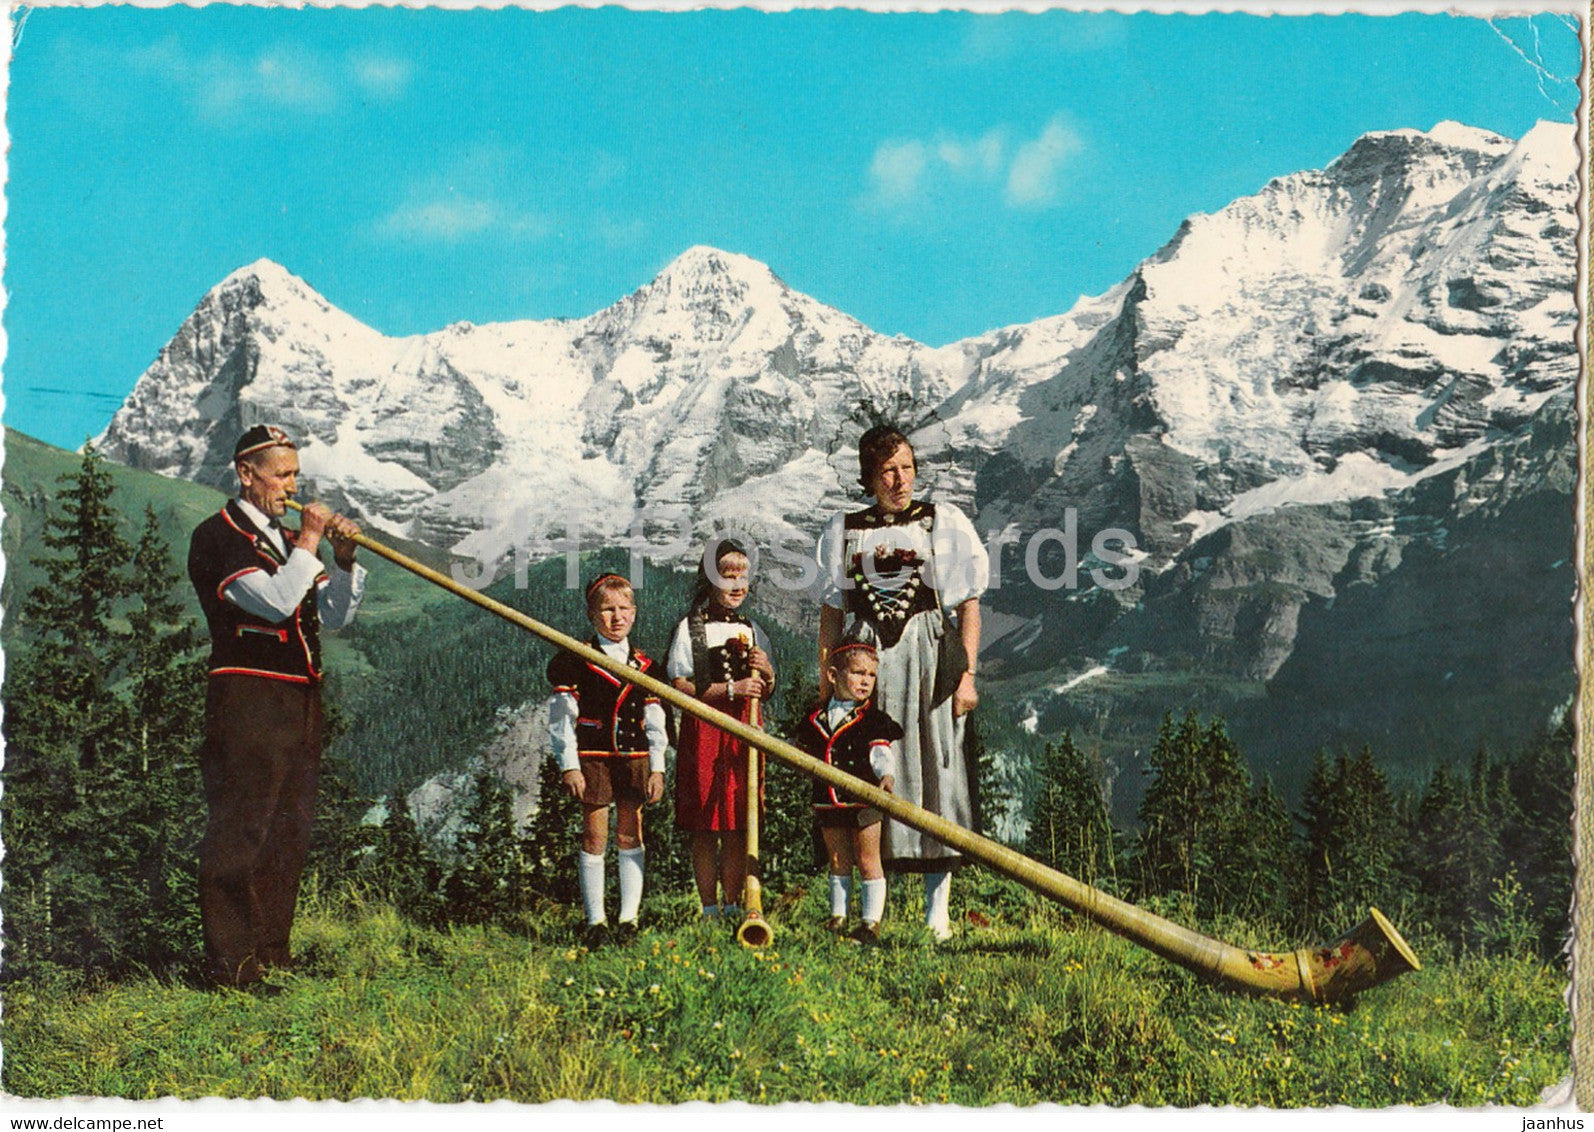 Berner Oberland - Blick auf Eiger Monch und Jungfrau - Alphorn - Swiss folk costumes - Switzerland - used - JH Postcards